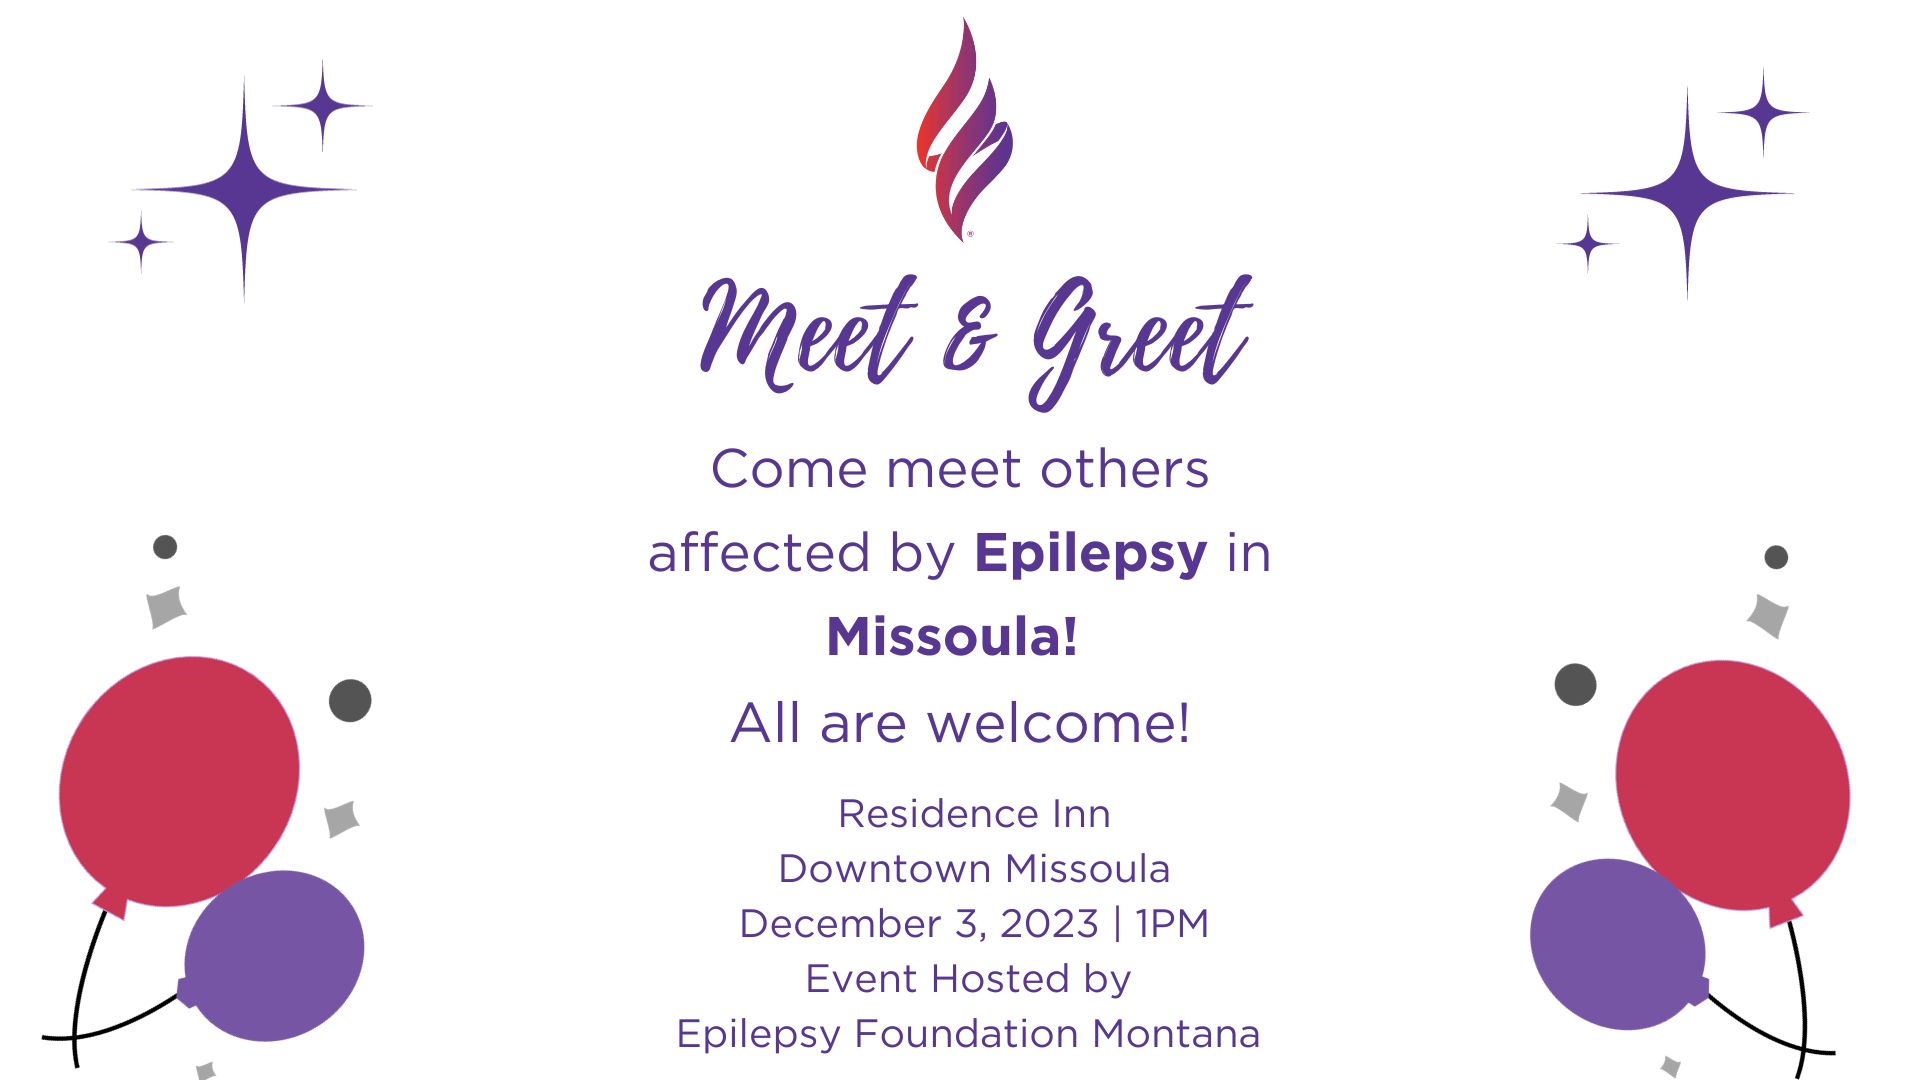 Epilepsy Foundation Community Meet and Greet, Missoula, Montana, United States